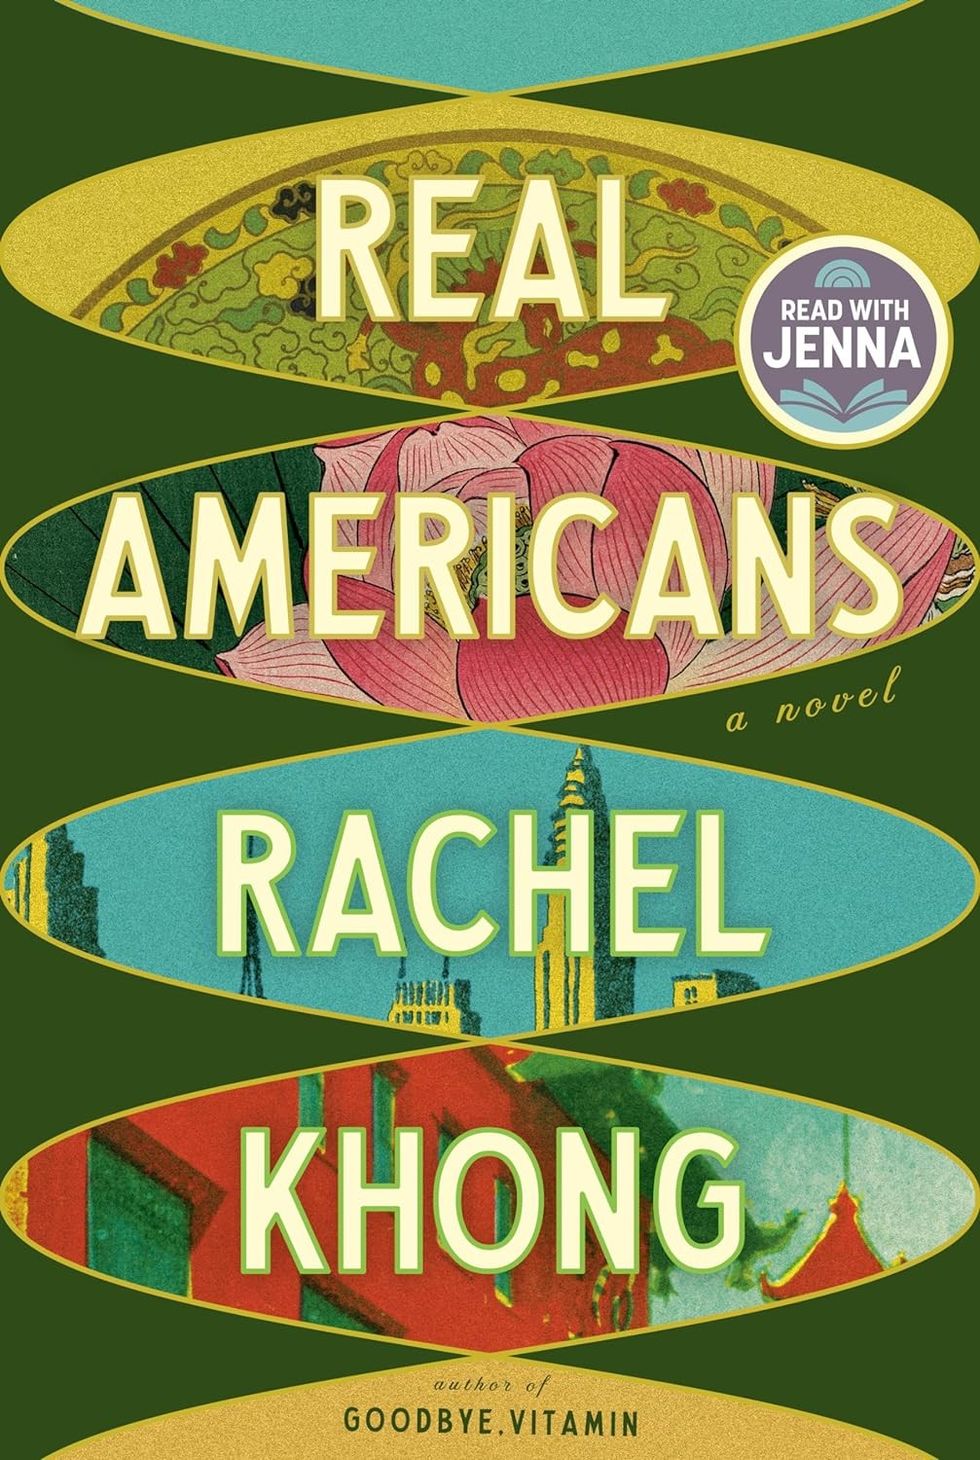 "Real Americans" by Rachel Khong